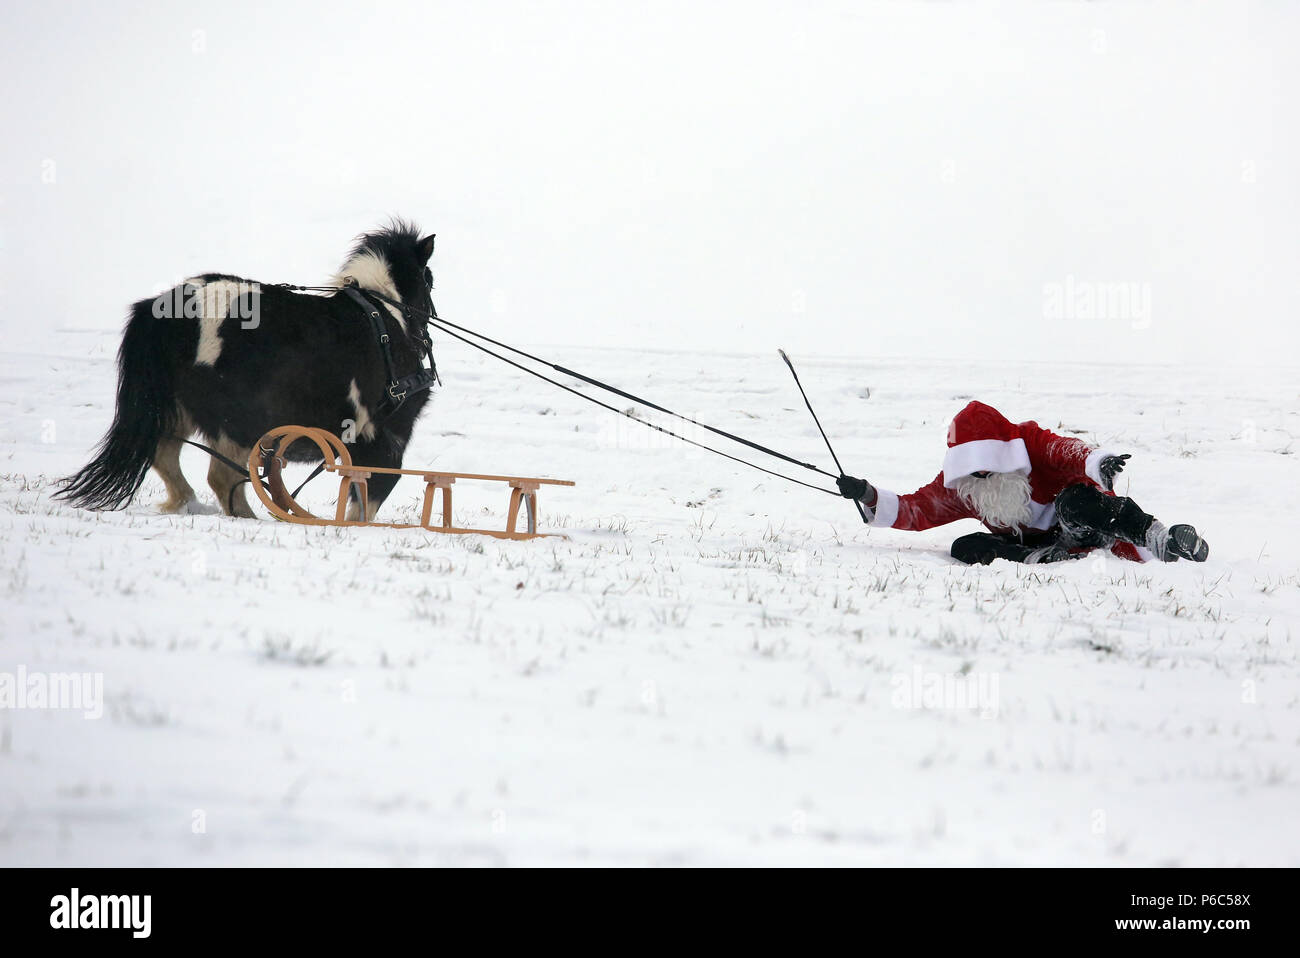 Oberoderwitz, habillé en père Noël, est tombé de son traîneau poney Banque D'Images